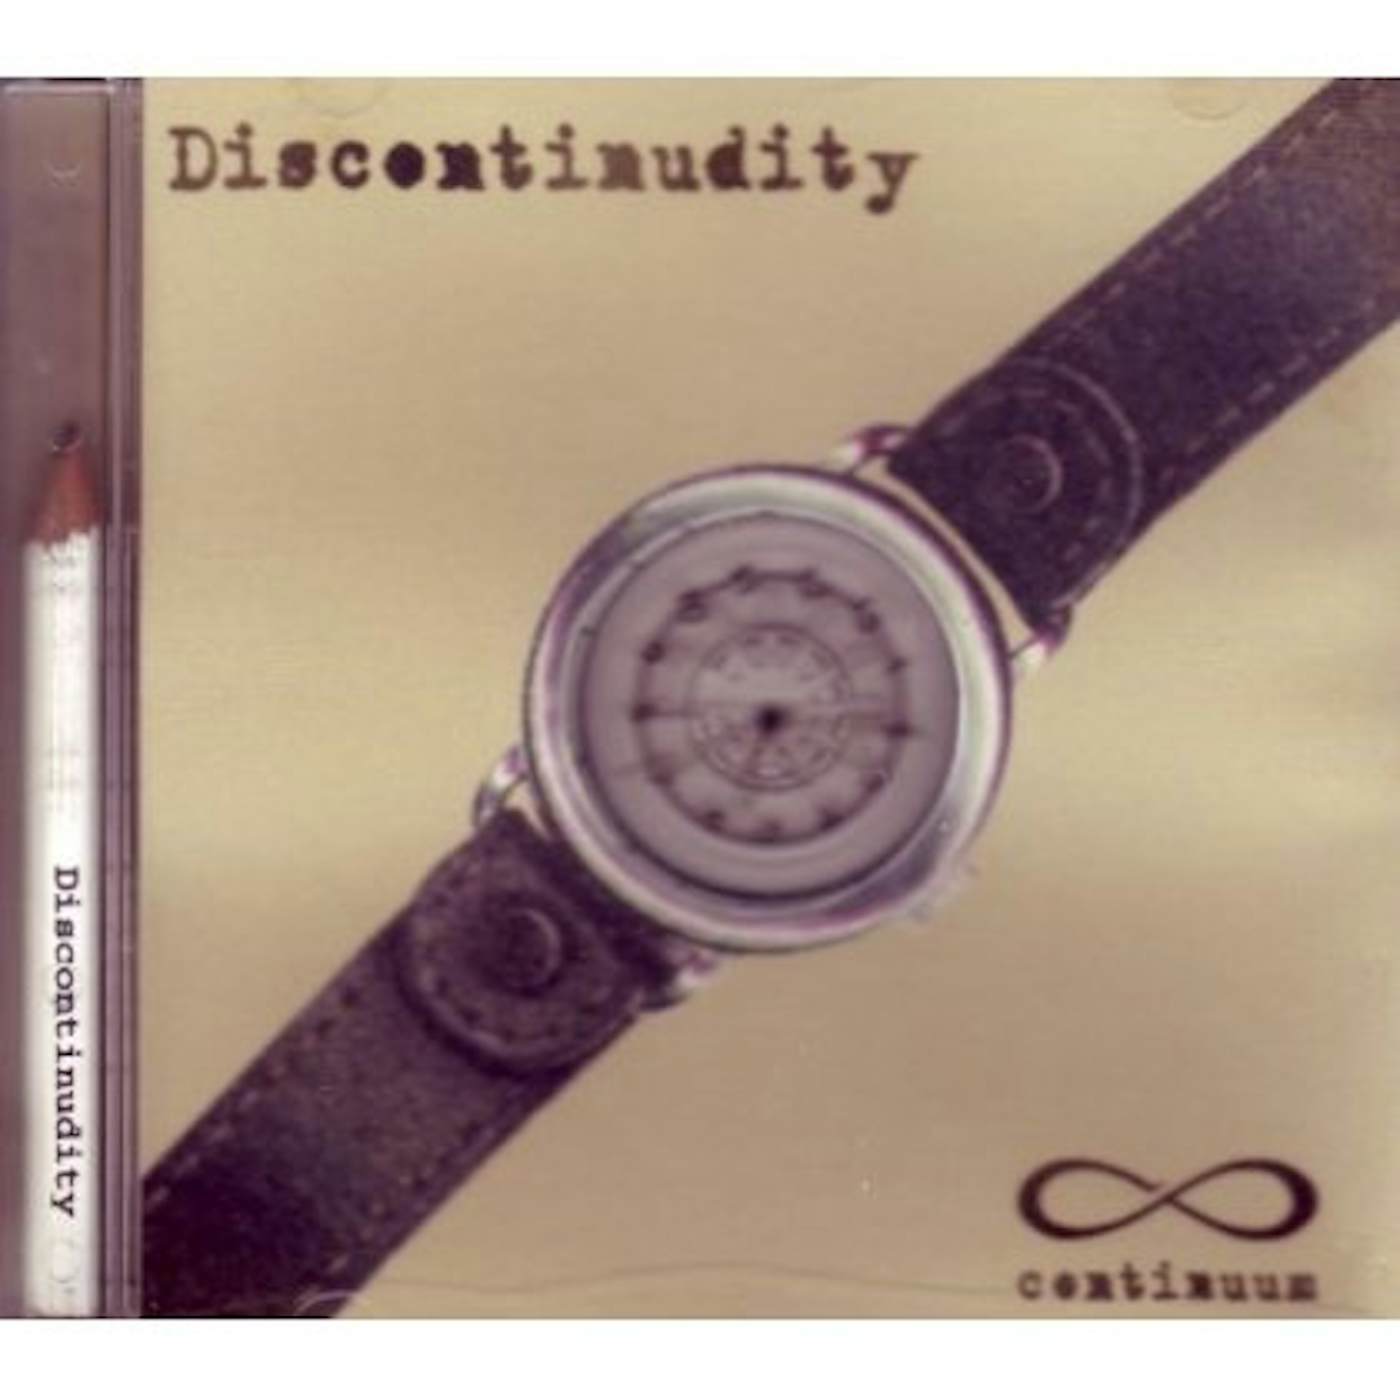 Continuum DISCONTINUDITY CD